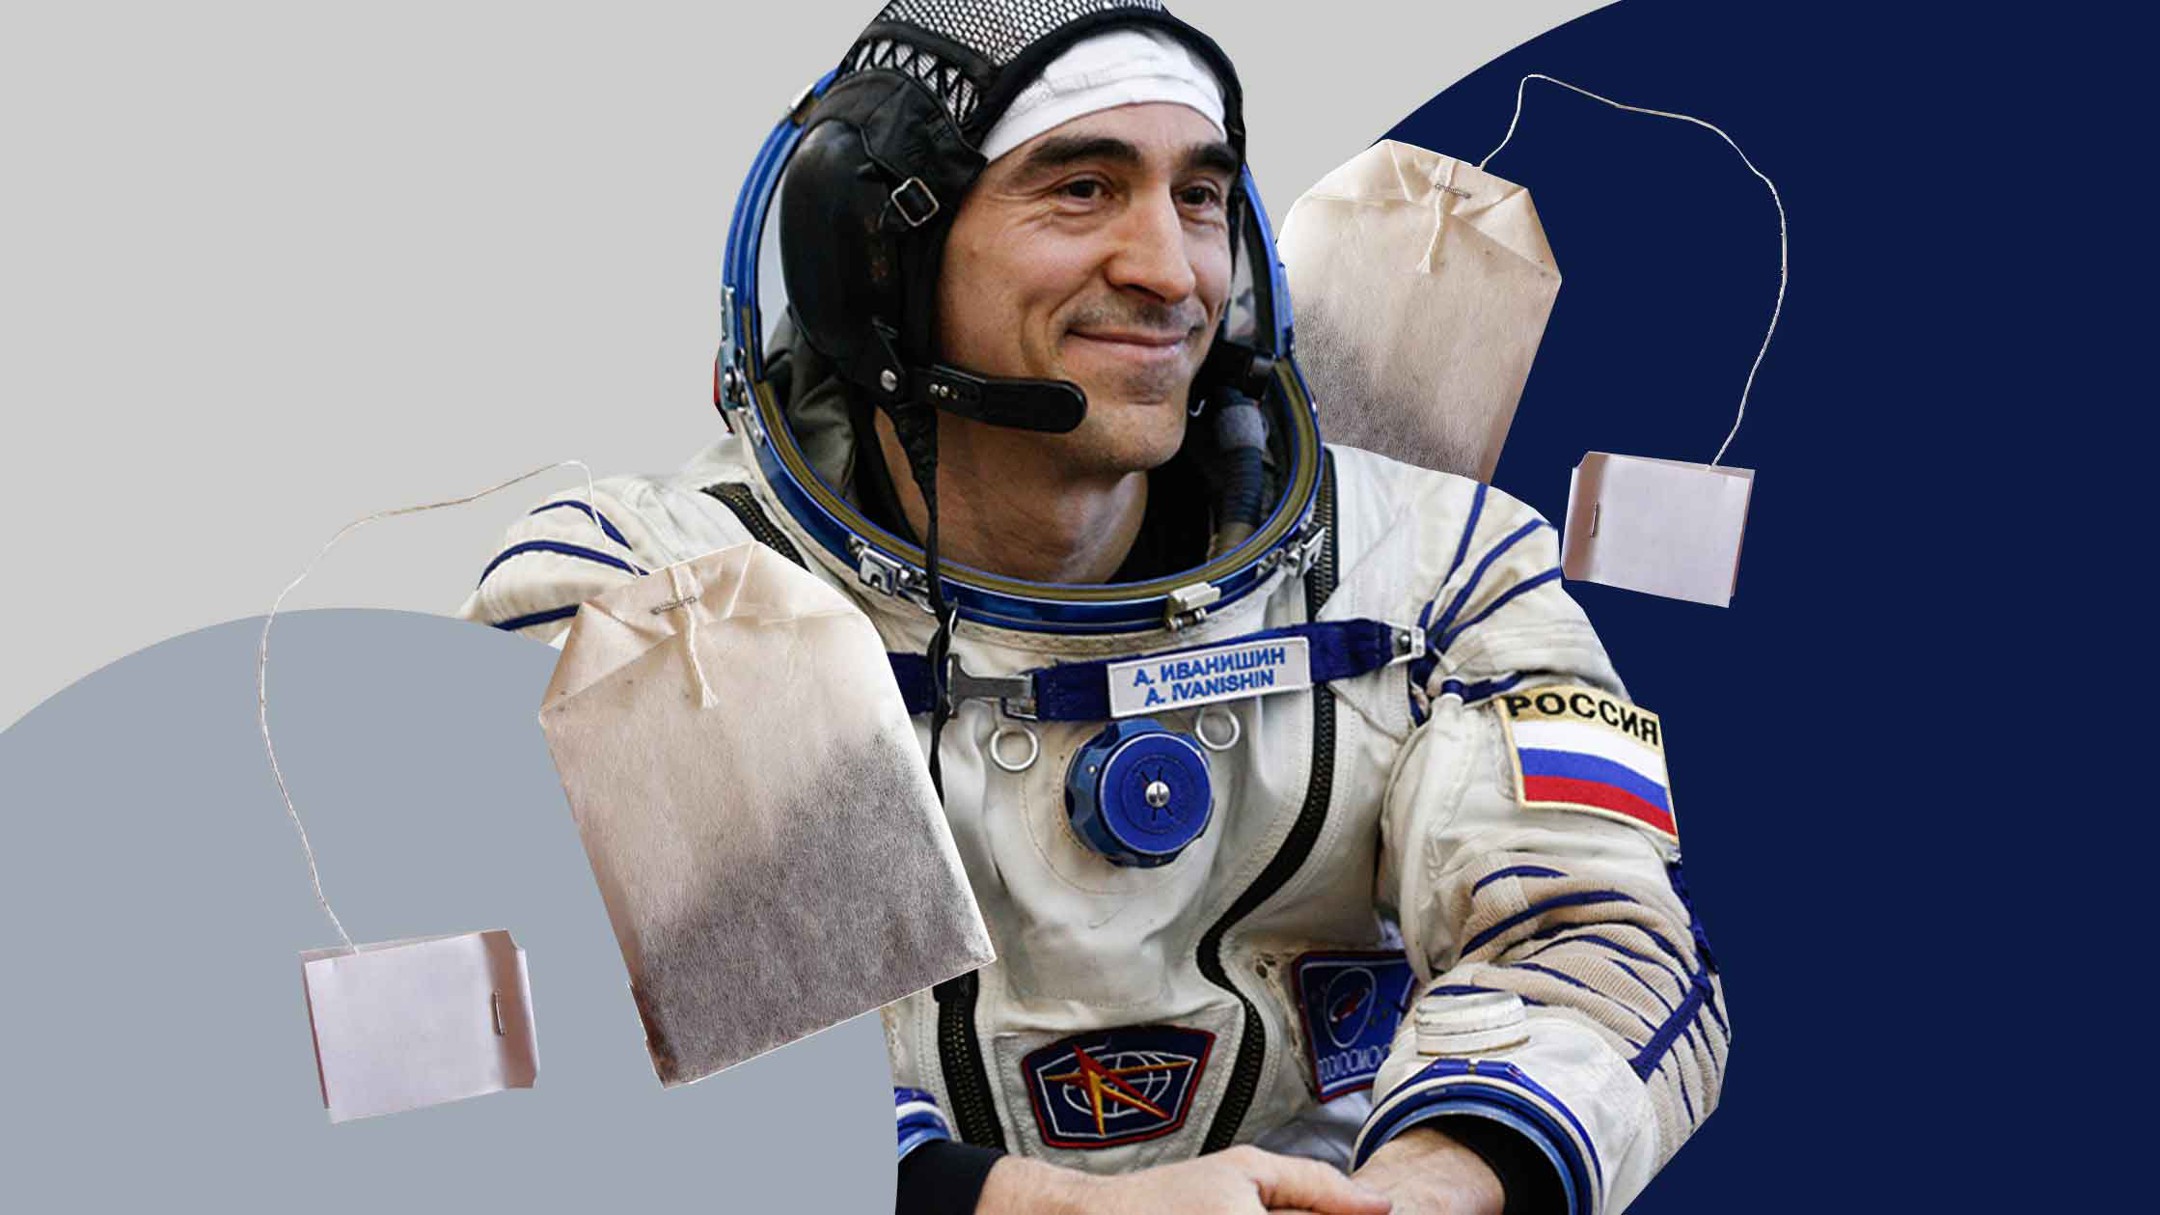 Dailystorm - Космонавты МКС нашли предполагаемое место утечки воздуха с помощью чая